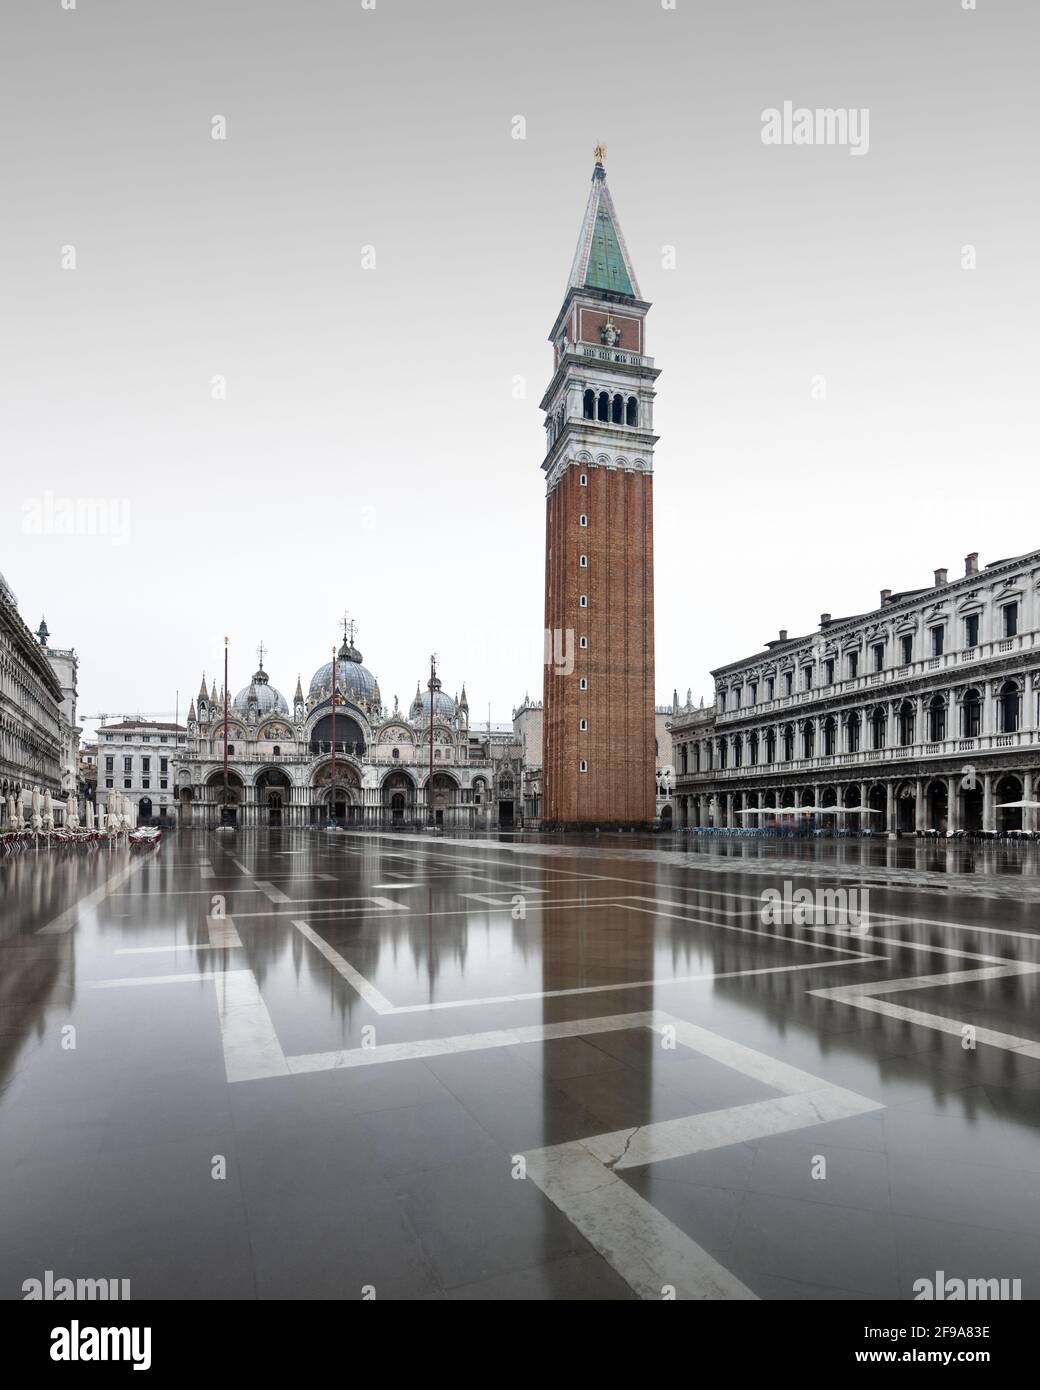 In den kühleren Wintermonaten überflutet die berühmte Flut, auch bekannt als Aqua Alta, regelmäßig den Markusplatz in Venedig und bietet wunderschöne Spiegelungen des campanile und der umliegenden Gebäude. Stockfoto